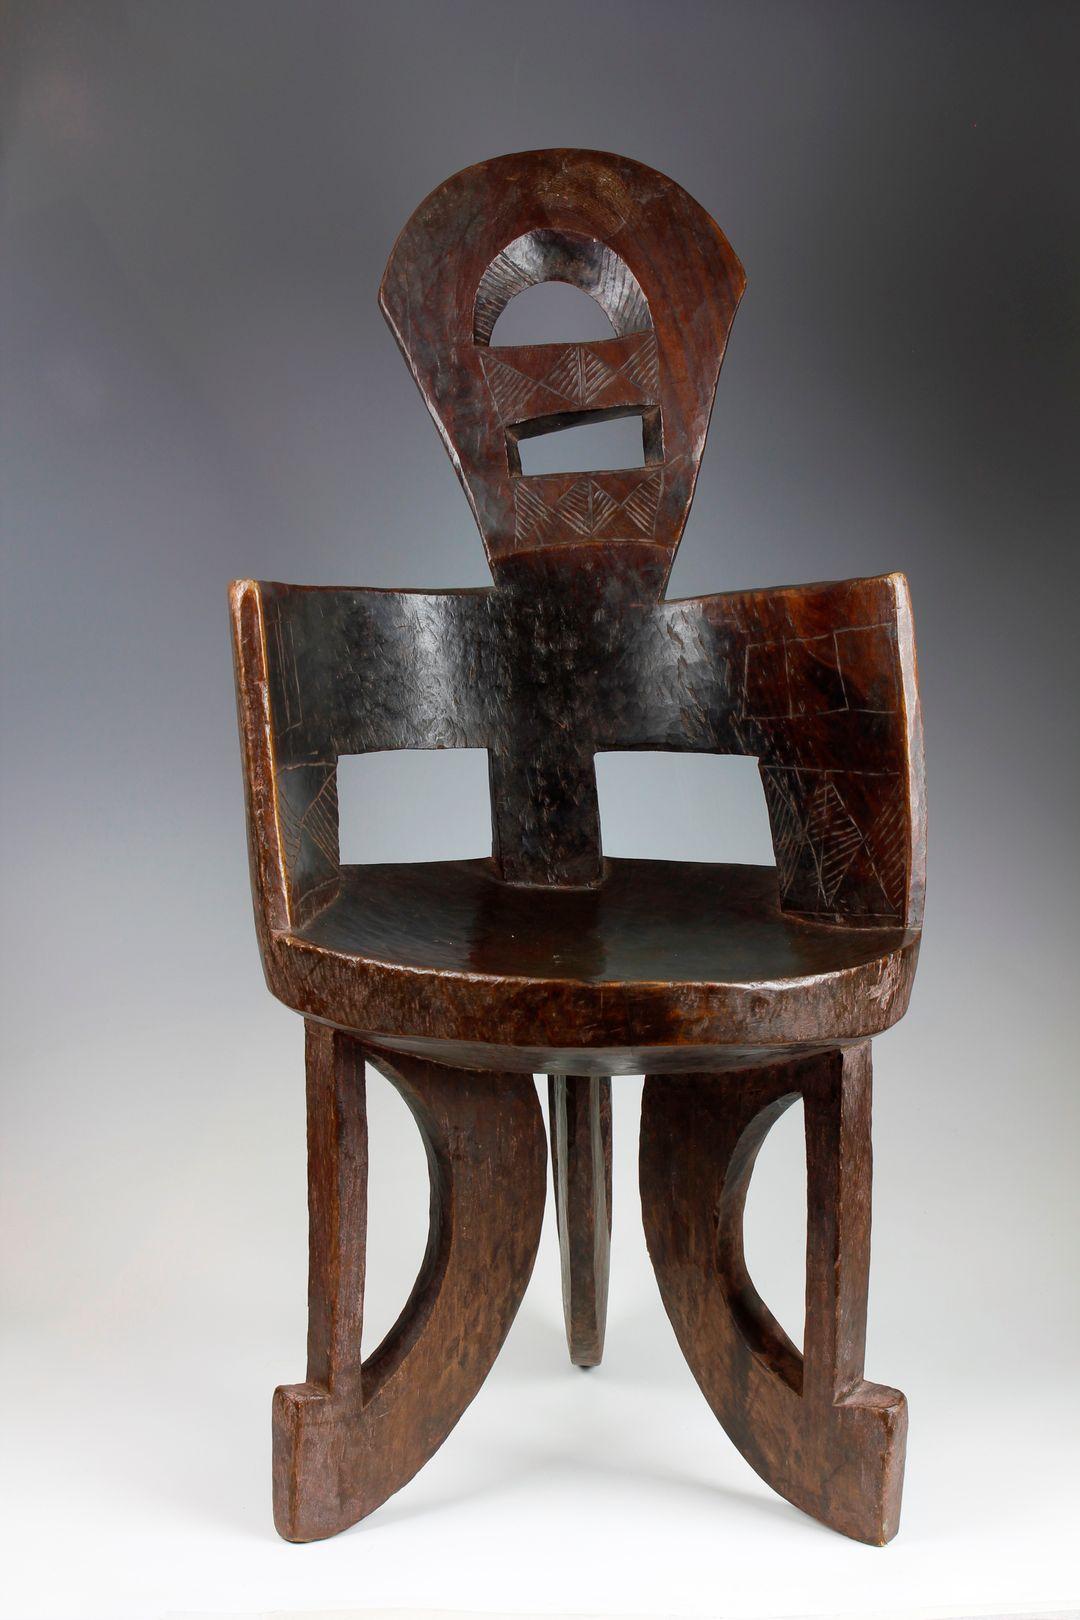 Cette chaise de la fin du XIXe siècle, provenant du Gindabarat dans la région d'Oromia en Éthiopie, a été finement sculptée dans une seule pièce de bois dense et lourd. Le siège circulaire, de taille étroite, est soutenu par trois pieds, qui